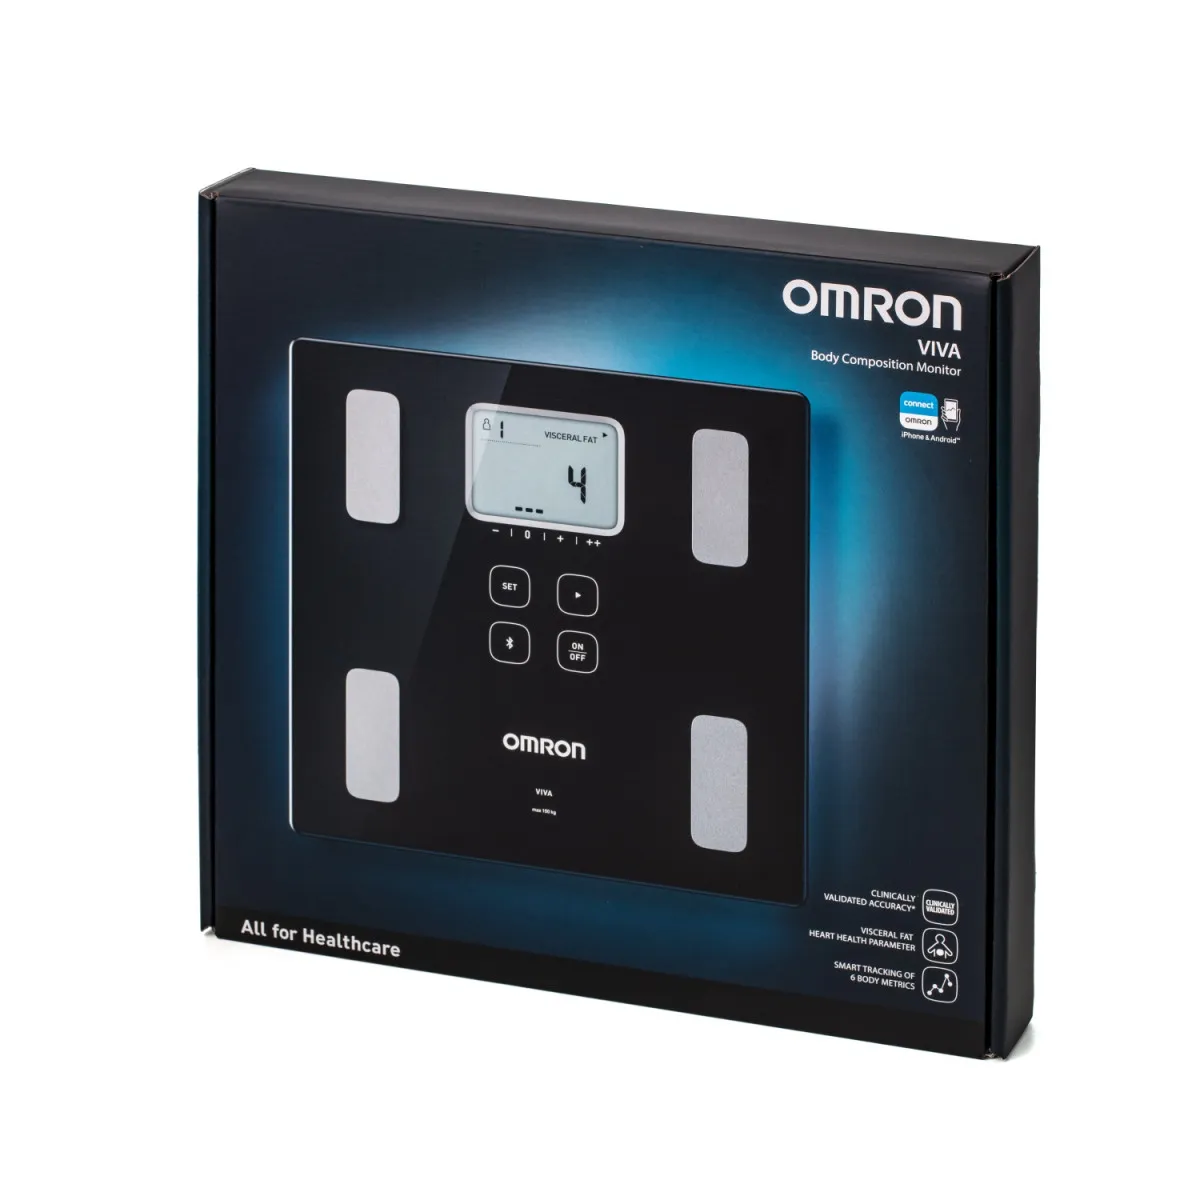 Умные весы Omron VIVA 6 показателей тела, Bluetooth подключение к приложению OMRON, черный#2